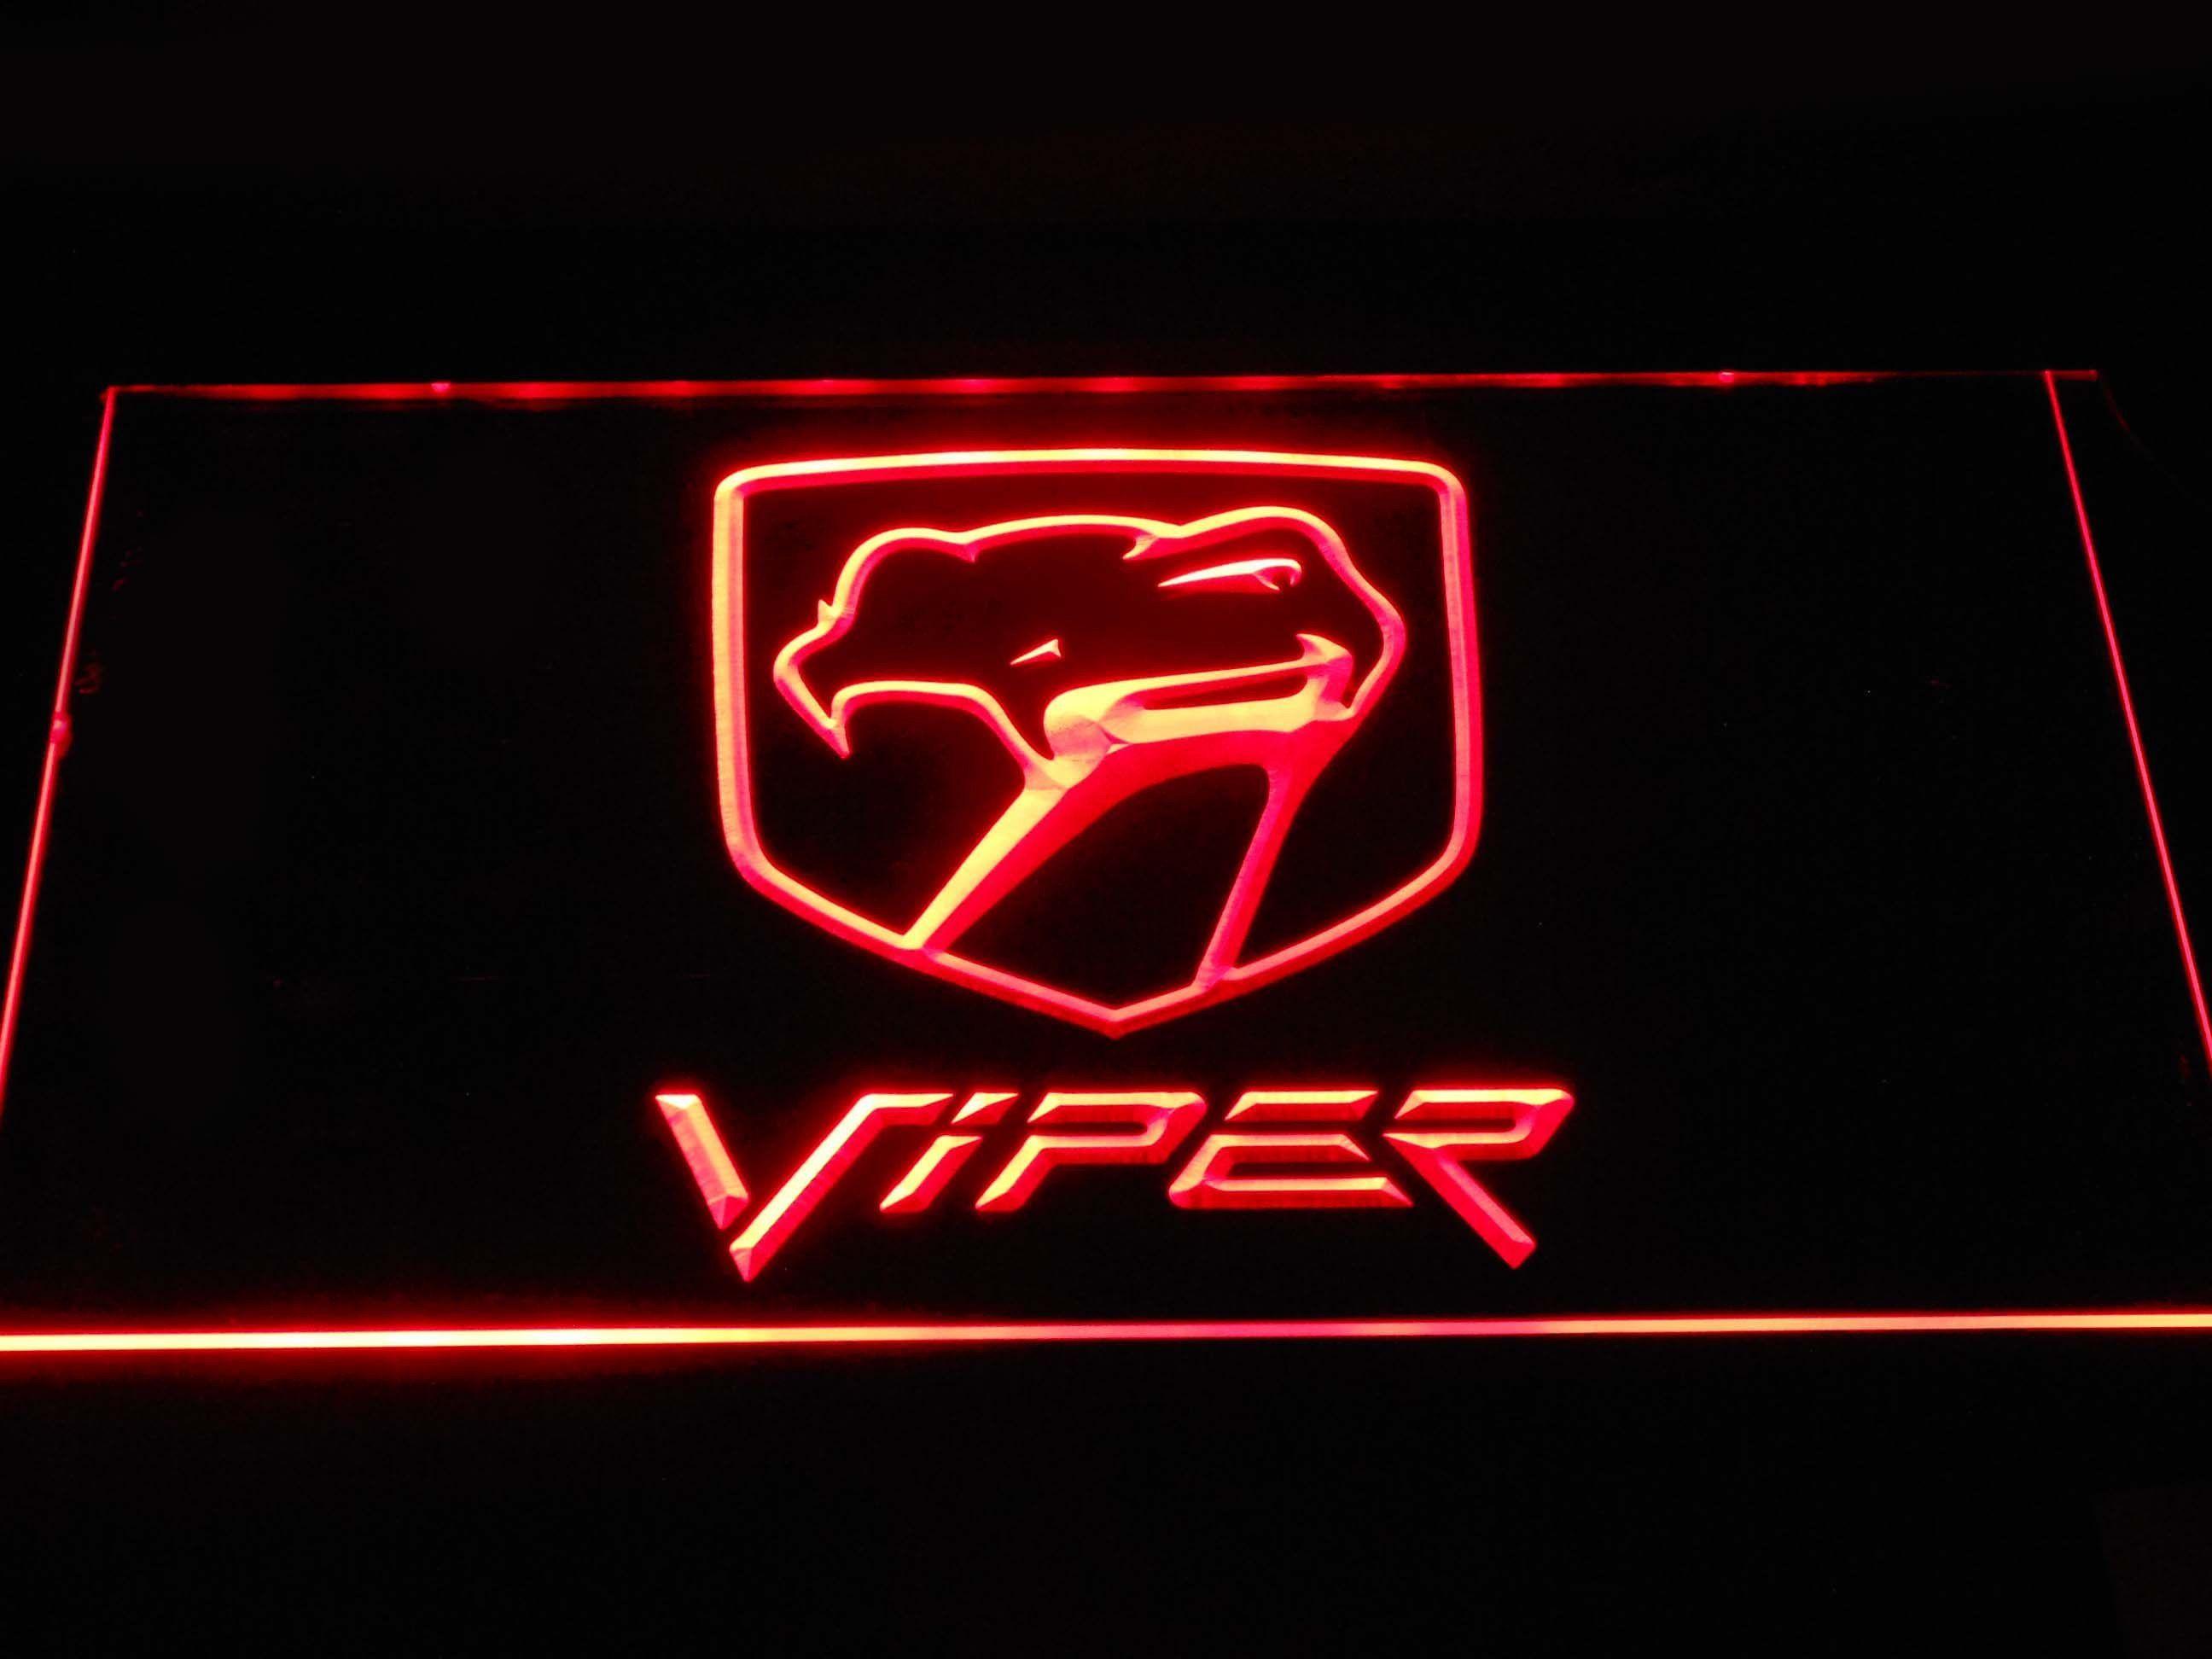 Old Red Dodge Logo - Dodge Viper Old Logo LED Neon Sign